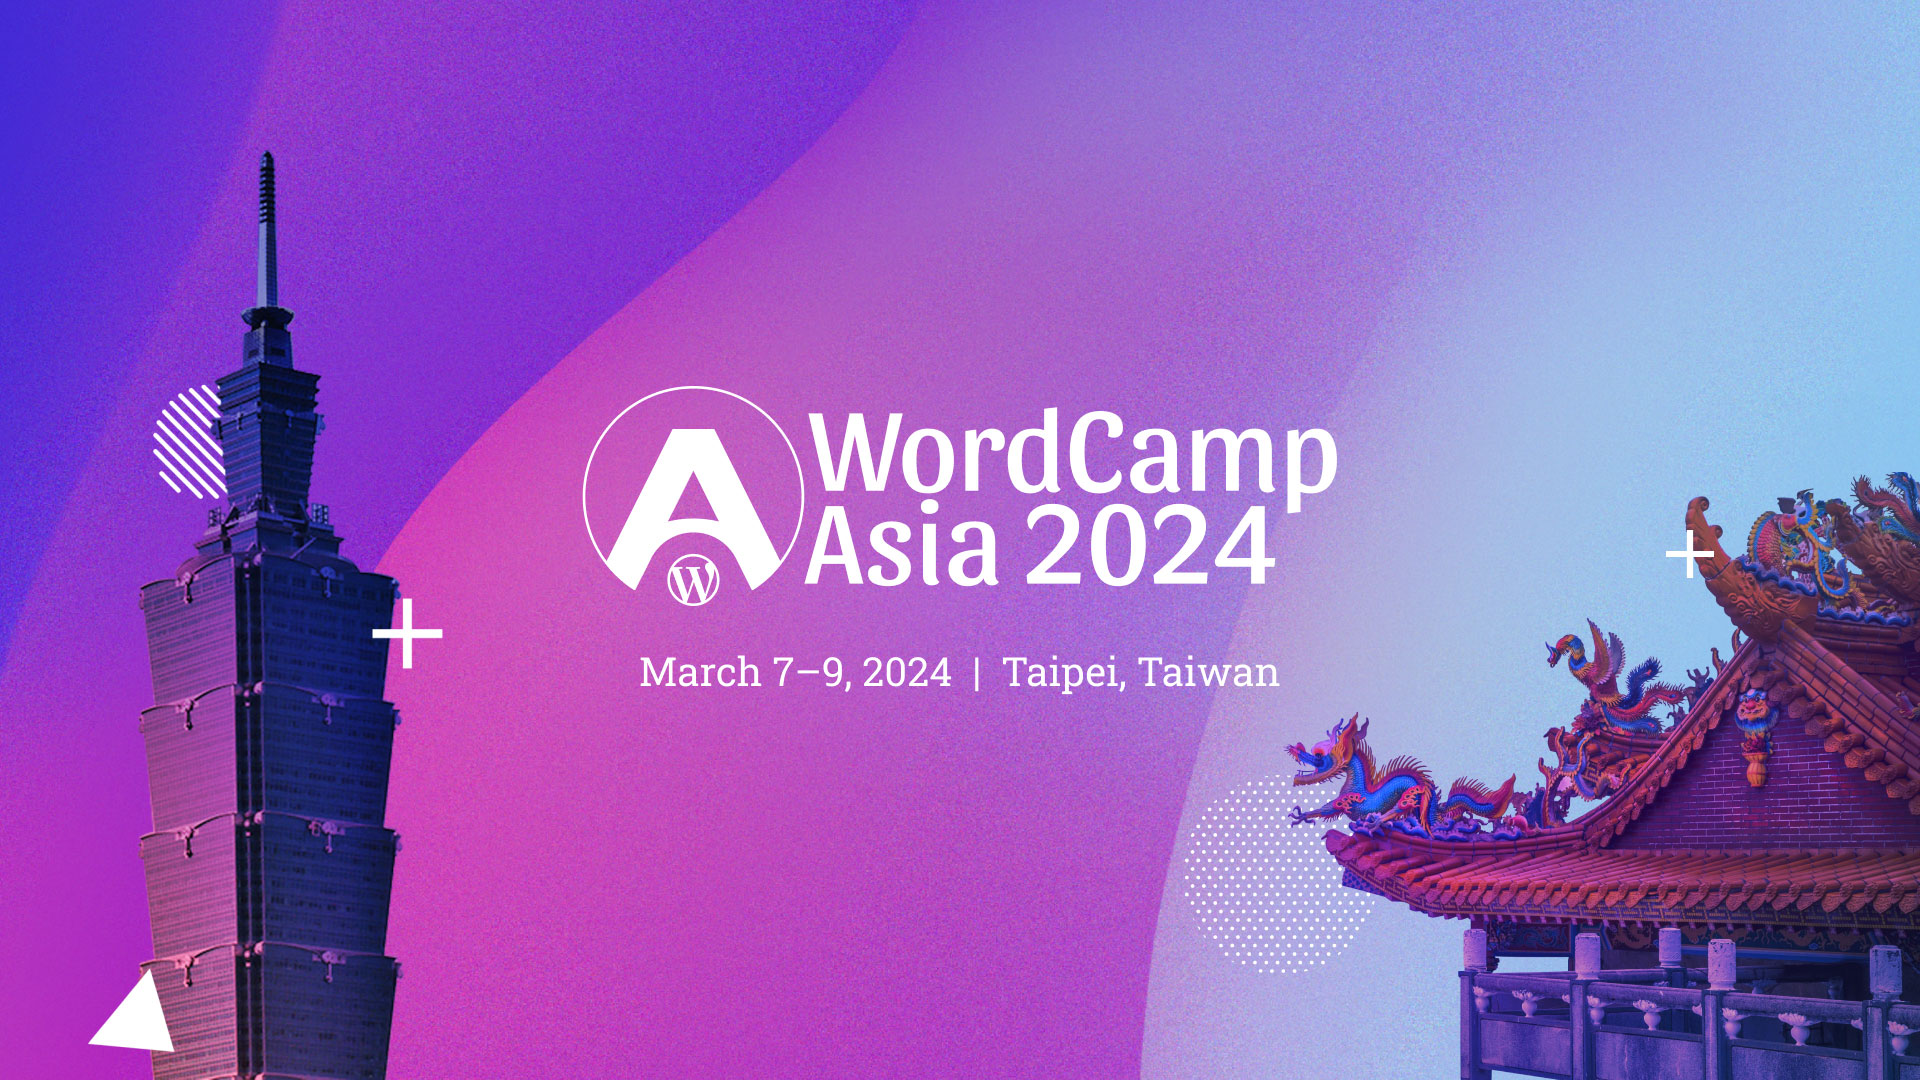 台湾開催 WordCamp Asia 2024 にてスタッフのちあきさんがパネルディスカッションに登壇します